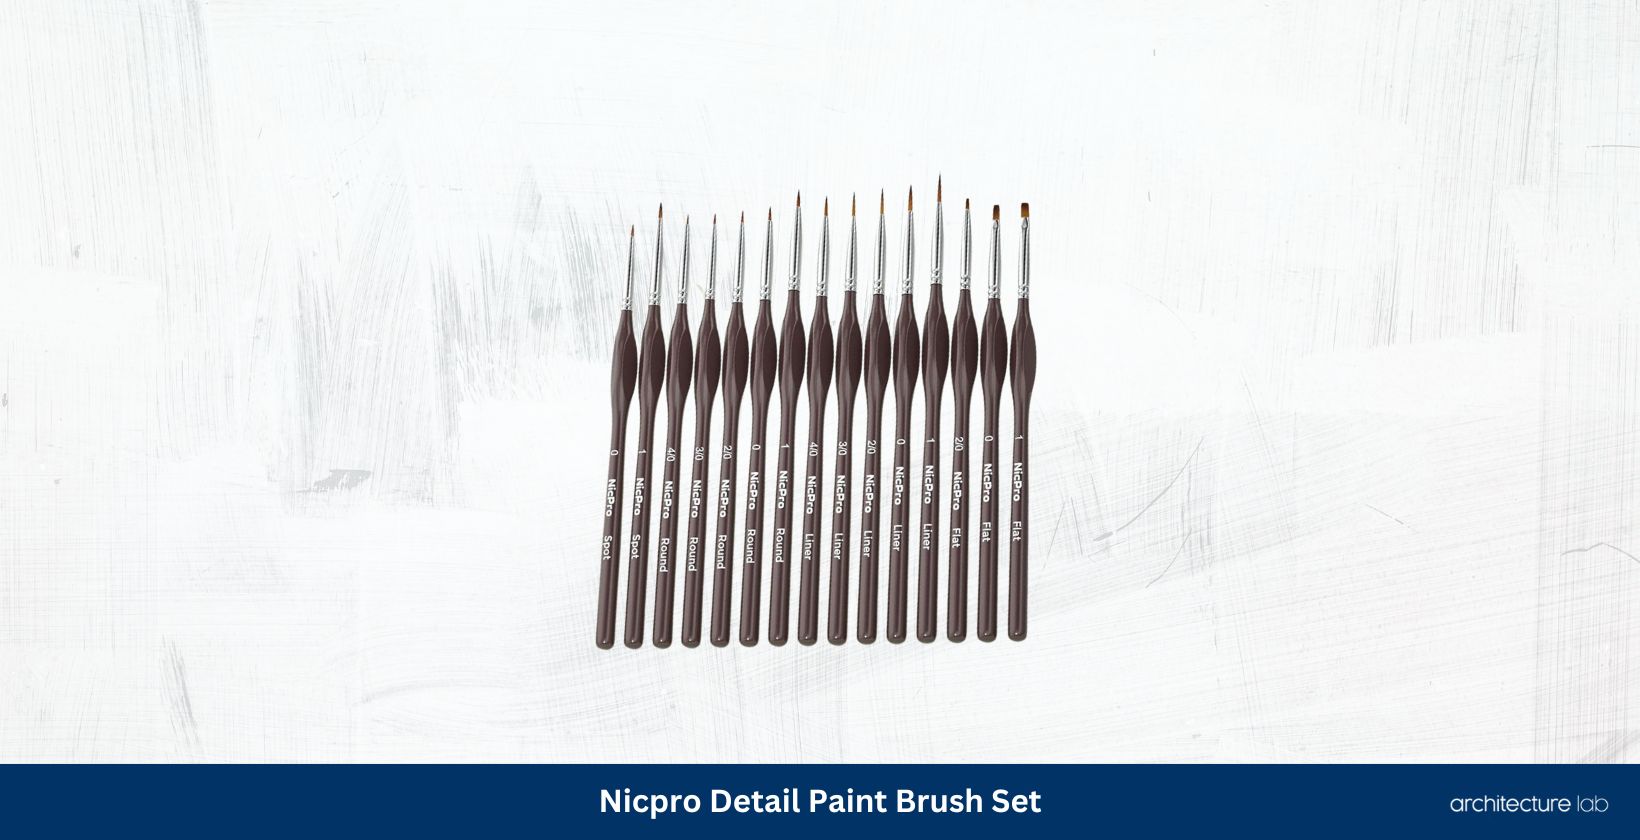 Nicpro detail paint brush set